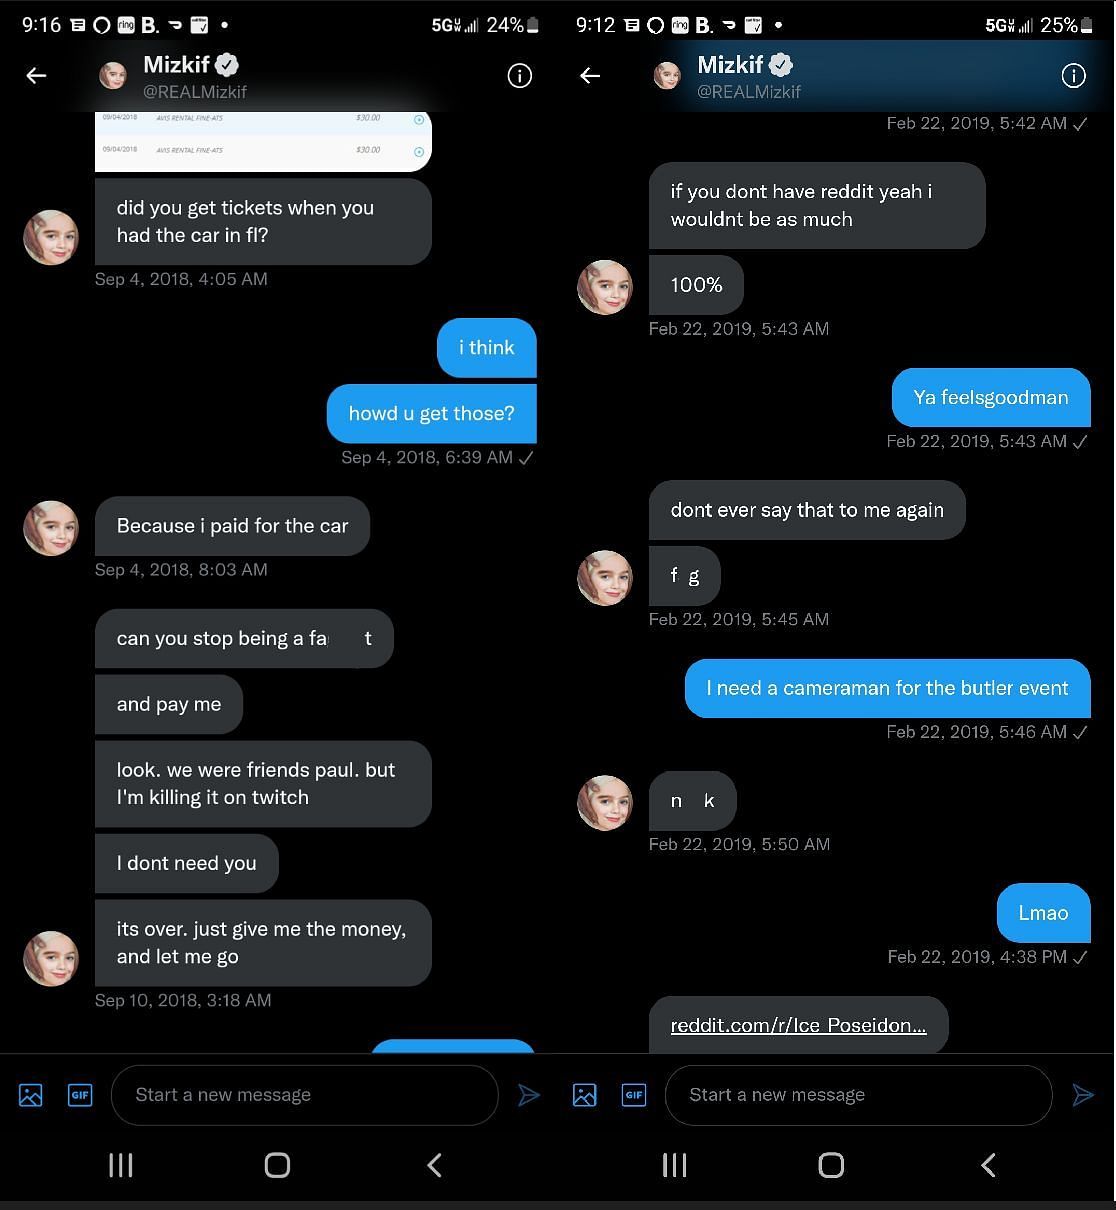 Ice Poseidon leaking old DM conversation featuring Mizkif 2/2 (Images via Twitter)